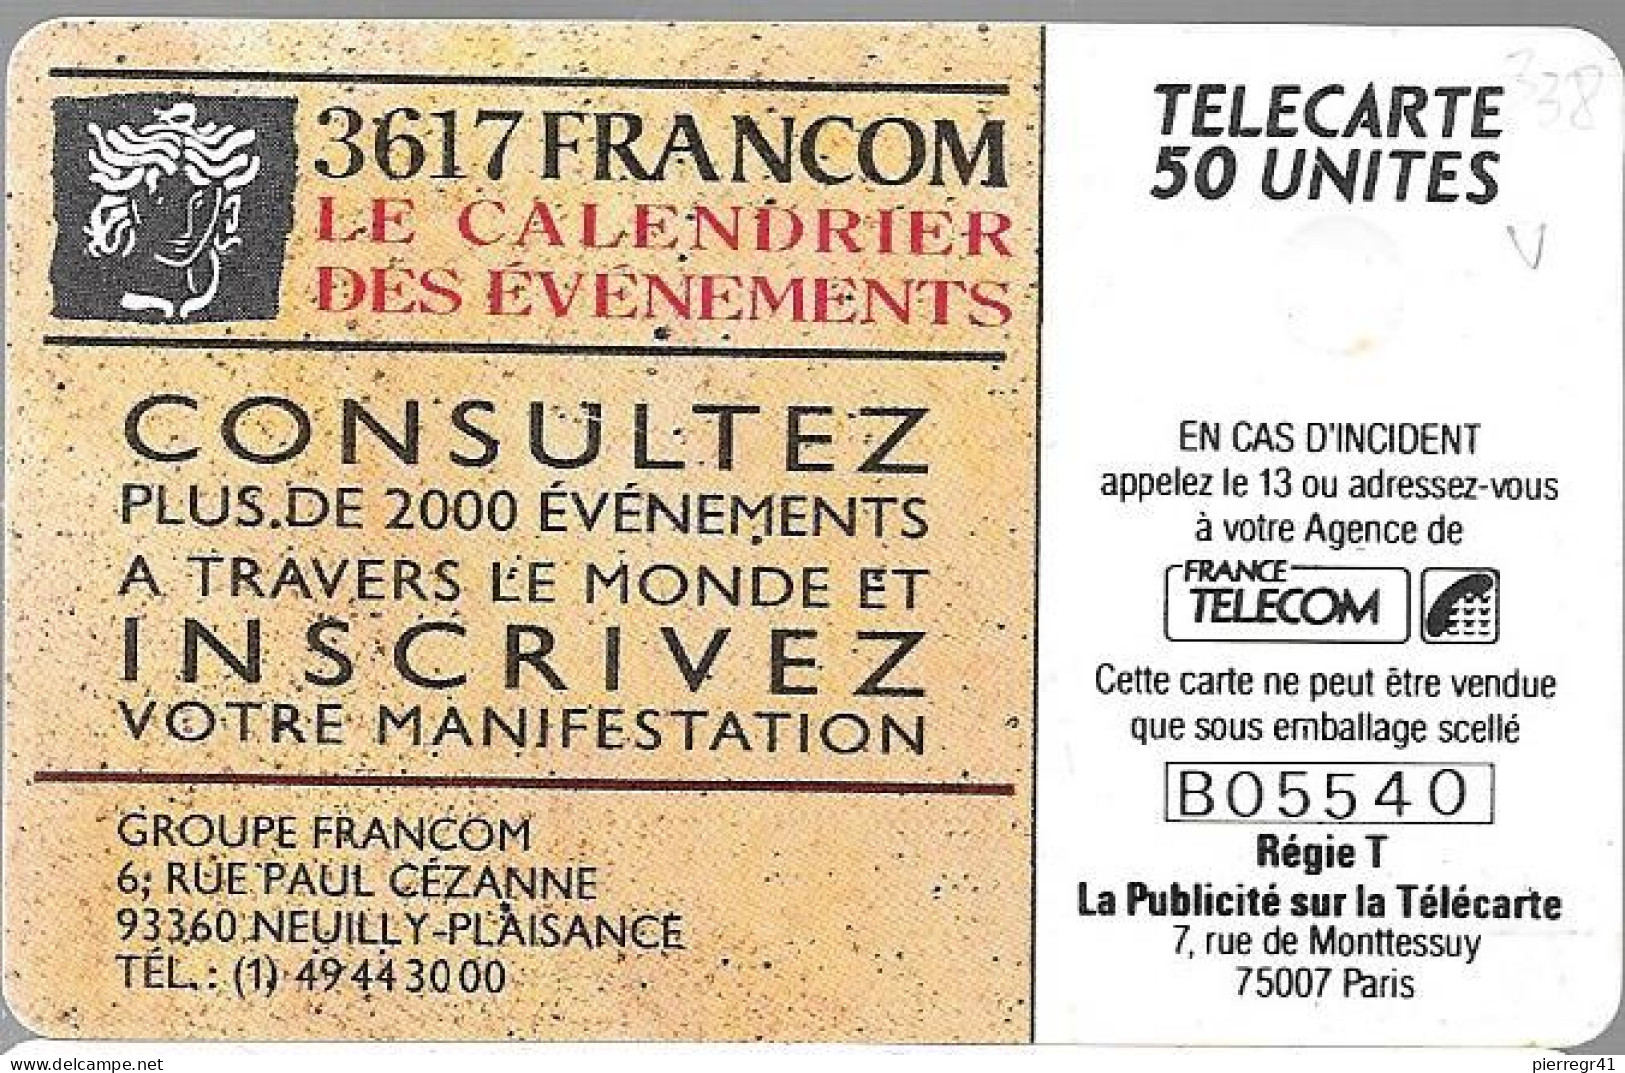 CARTE-PRIVEE-1990-D338-02/91-GEMA-3617 FRANCOM-Minitel Evénements-1000ex-R° Laqué-Utilisé-TBE/LUXE - Telefoonkaarten Voor Particulieren